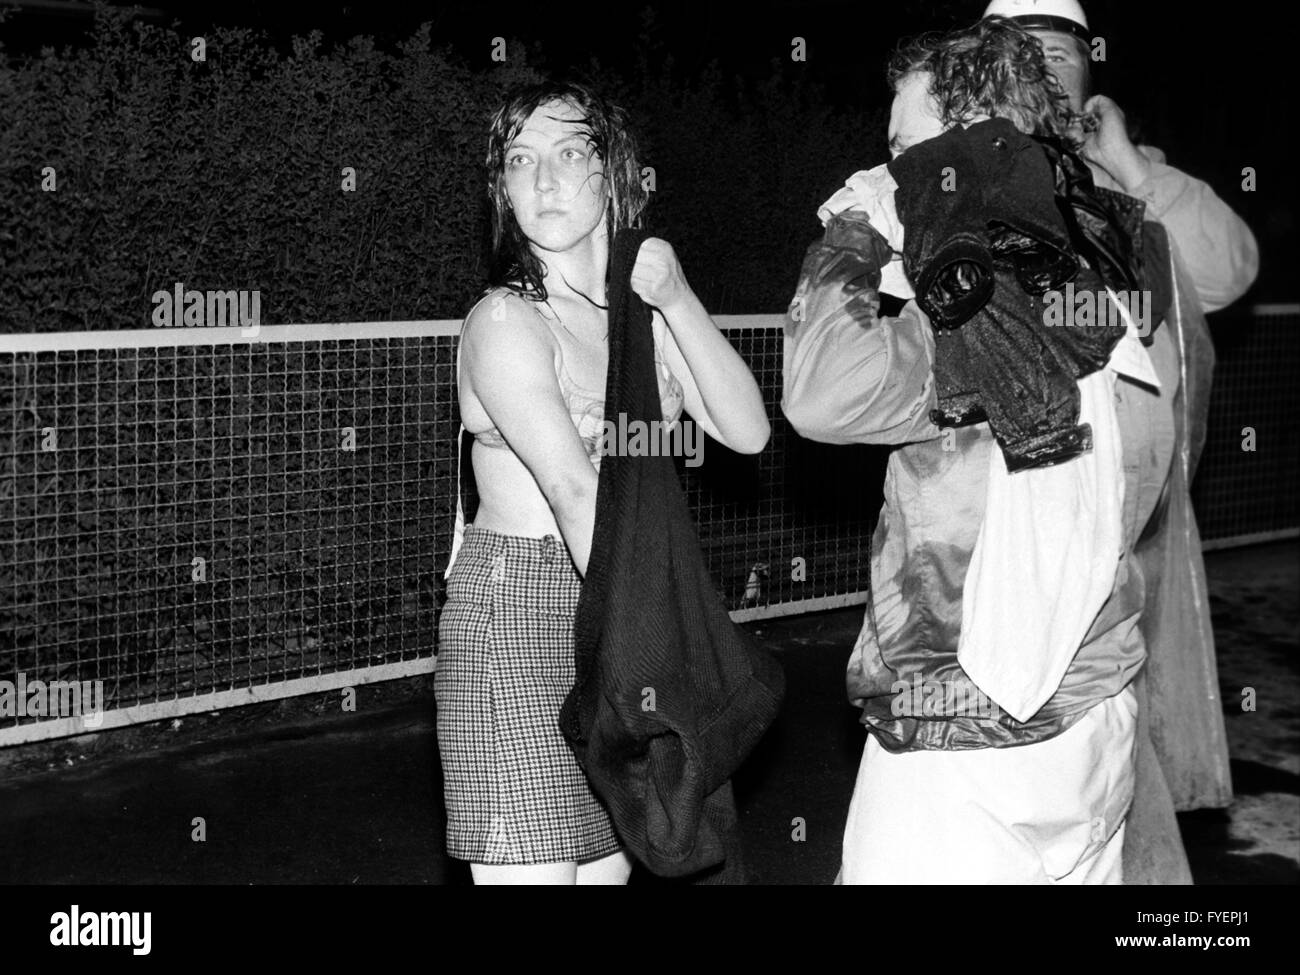 Manifestant une femme se déshabille après qu'elle a été touchée par un canon à eau lors d'une manifestation anti Springer le dimanche de Pâques, 15 avril 1968. Banque D'Images